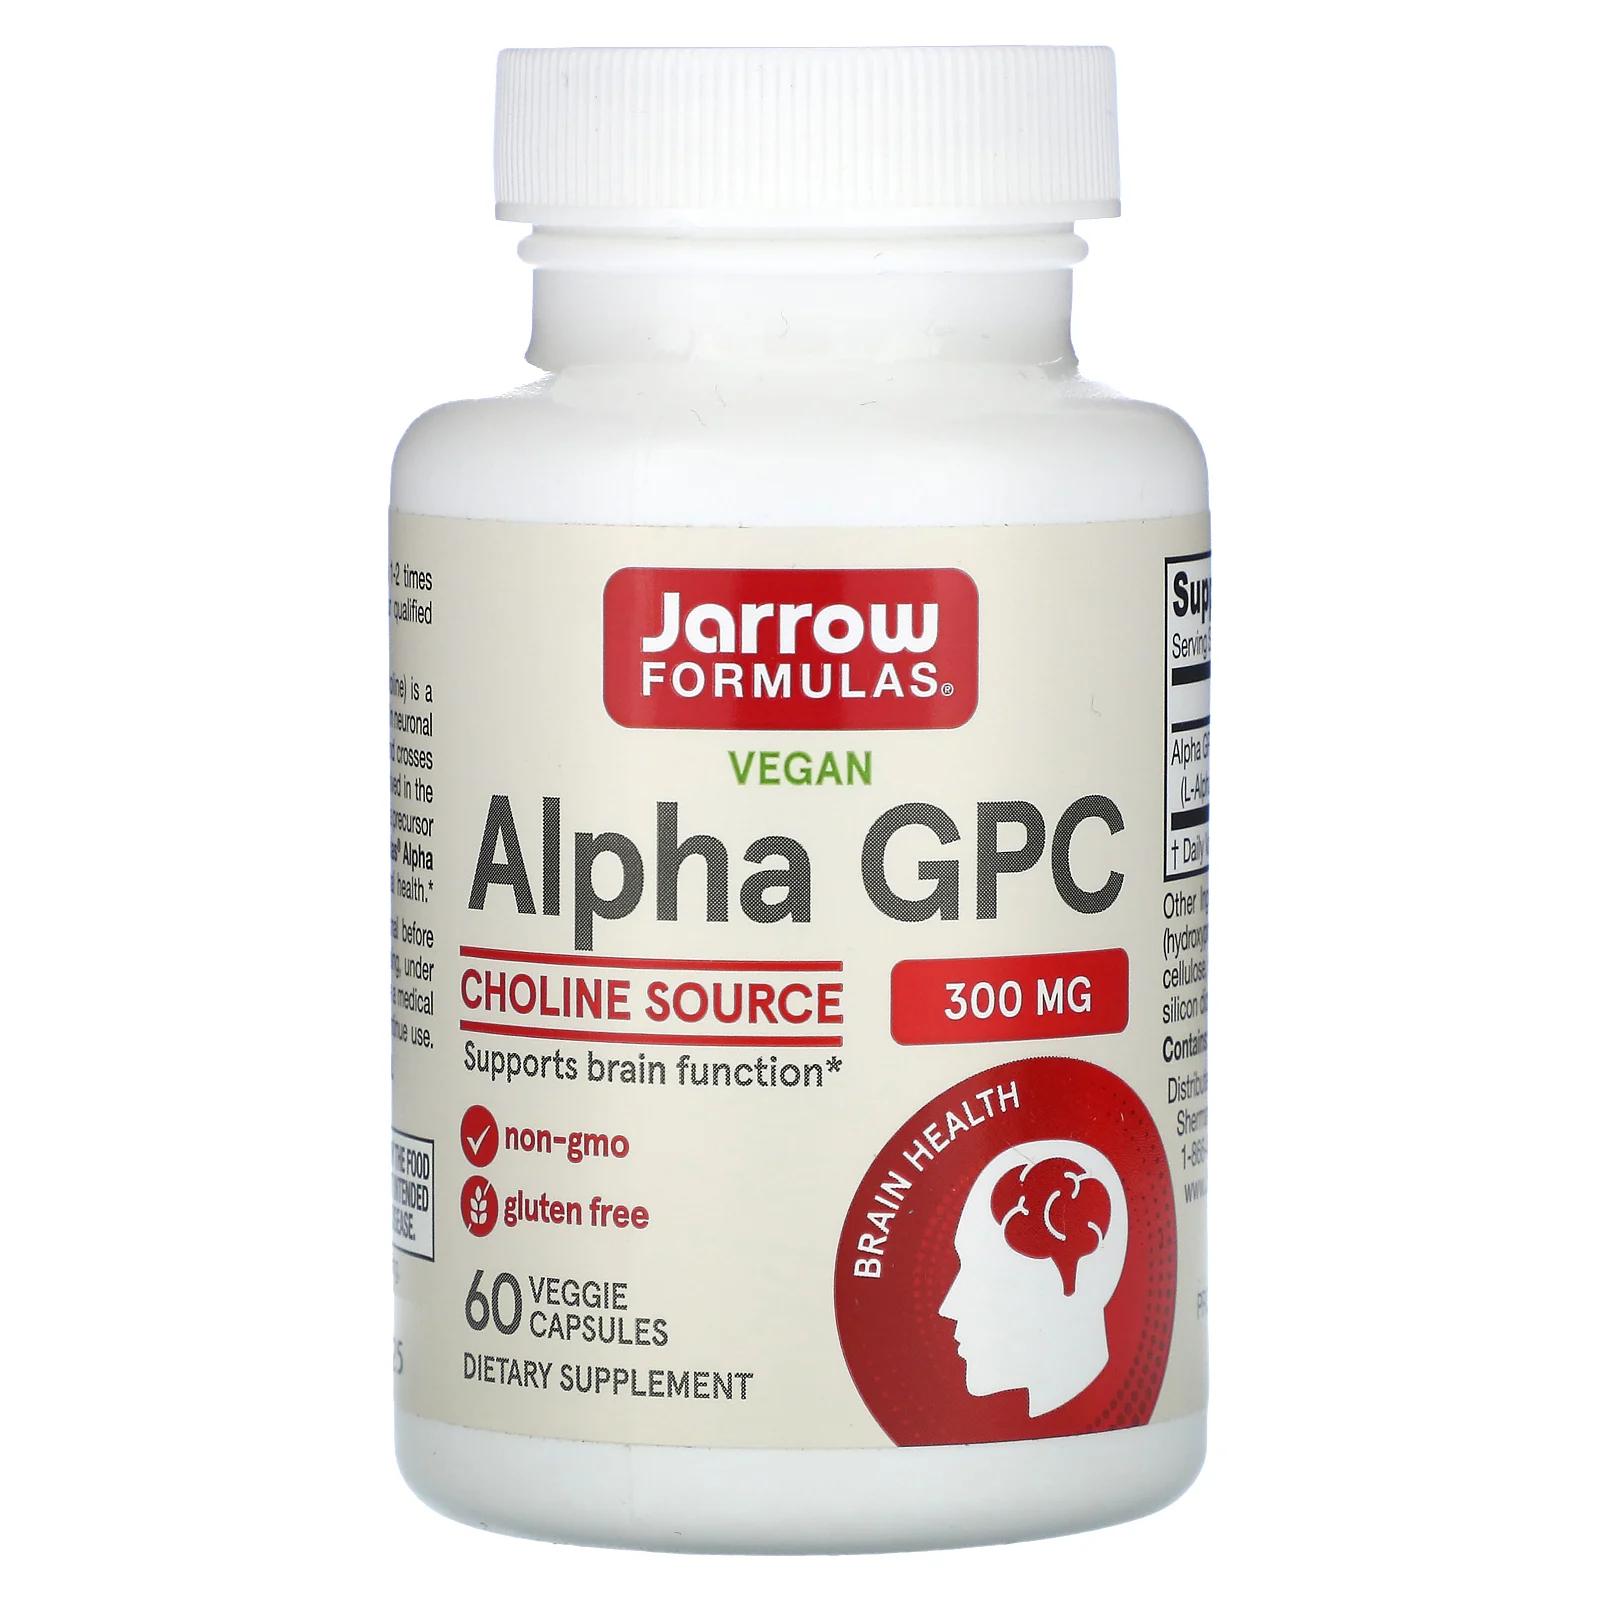 Jarrow Formulas Альфа ГФХ 300 мг 60 вегетарианских капсул альфа гфх jarrow formulas 300 мг 60 капсул